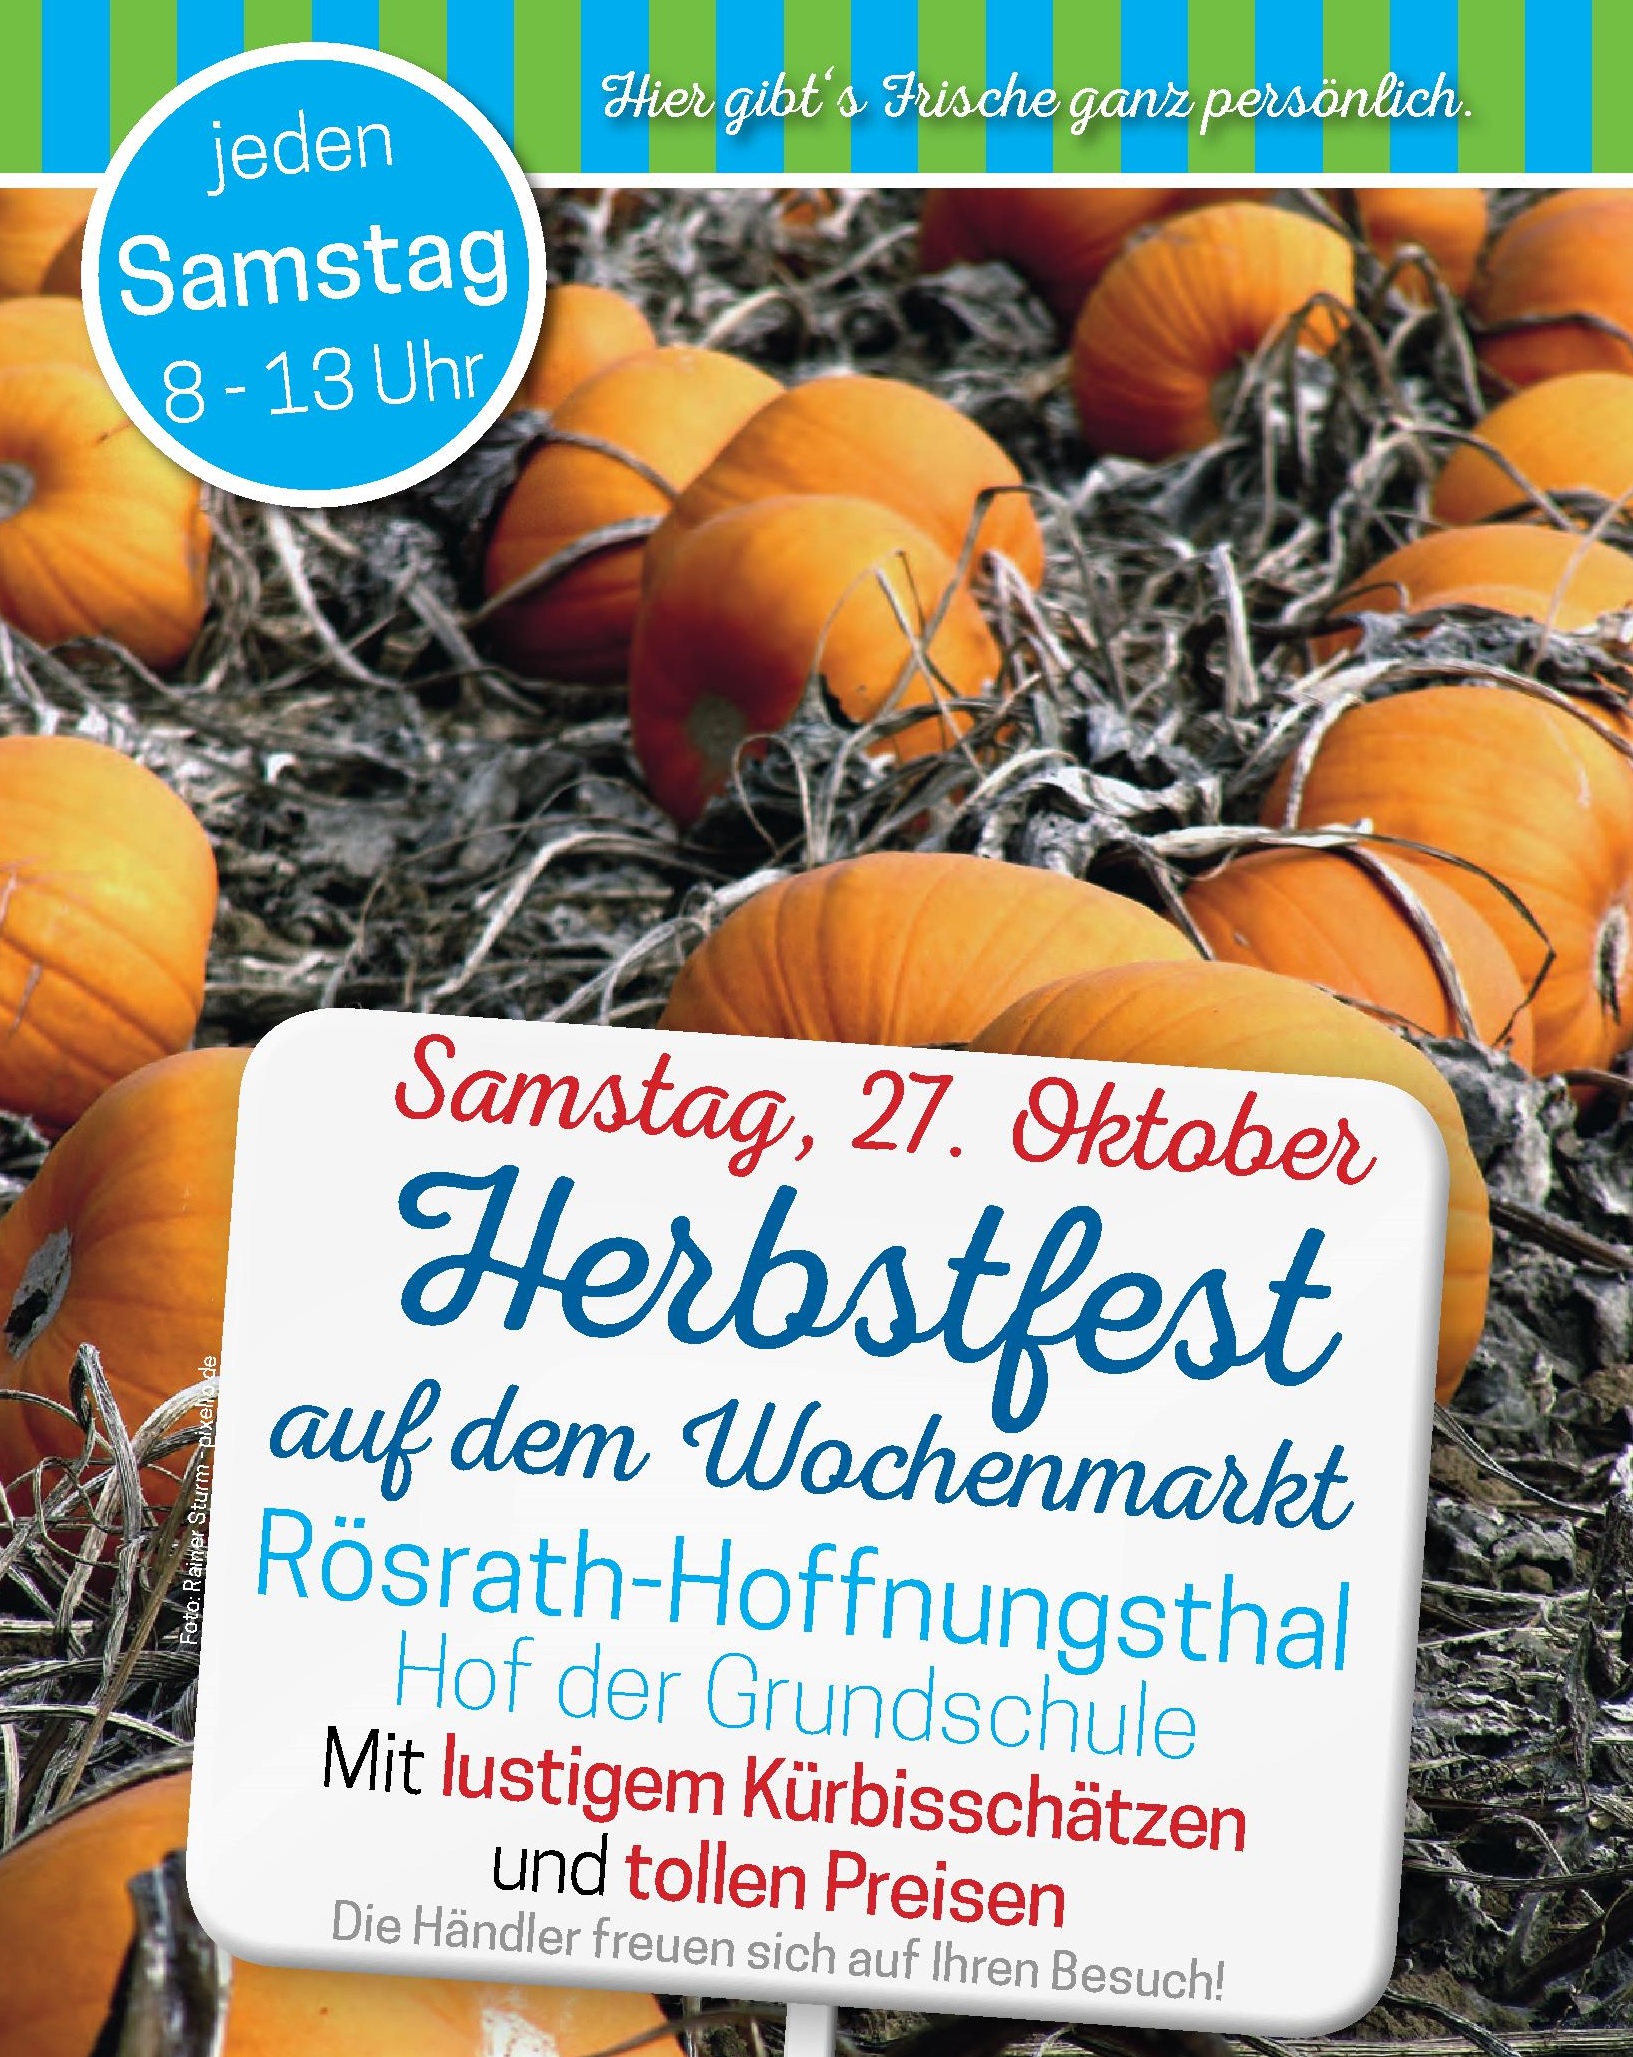 Herbstfest auf dem Wochenmarkt in Rösrath-Hoffnungsthal